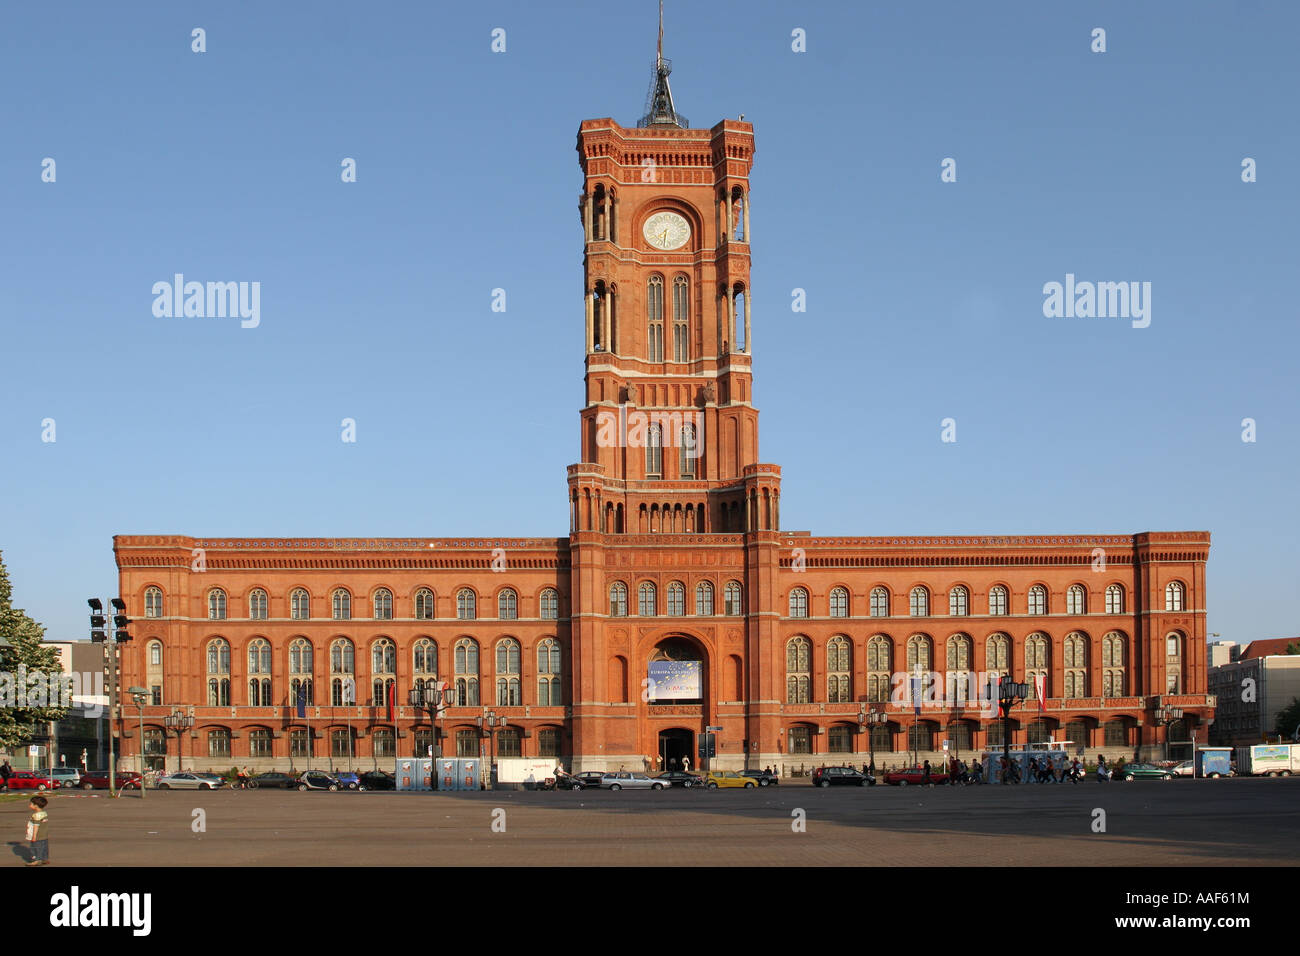 Rotes Rathaus, Berlin Stock Photo